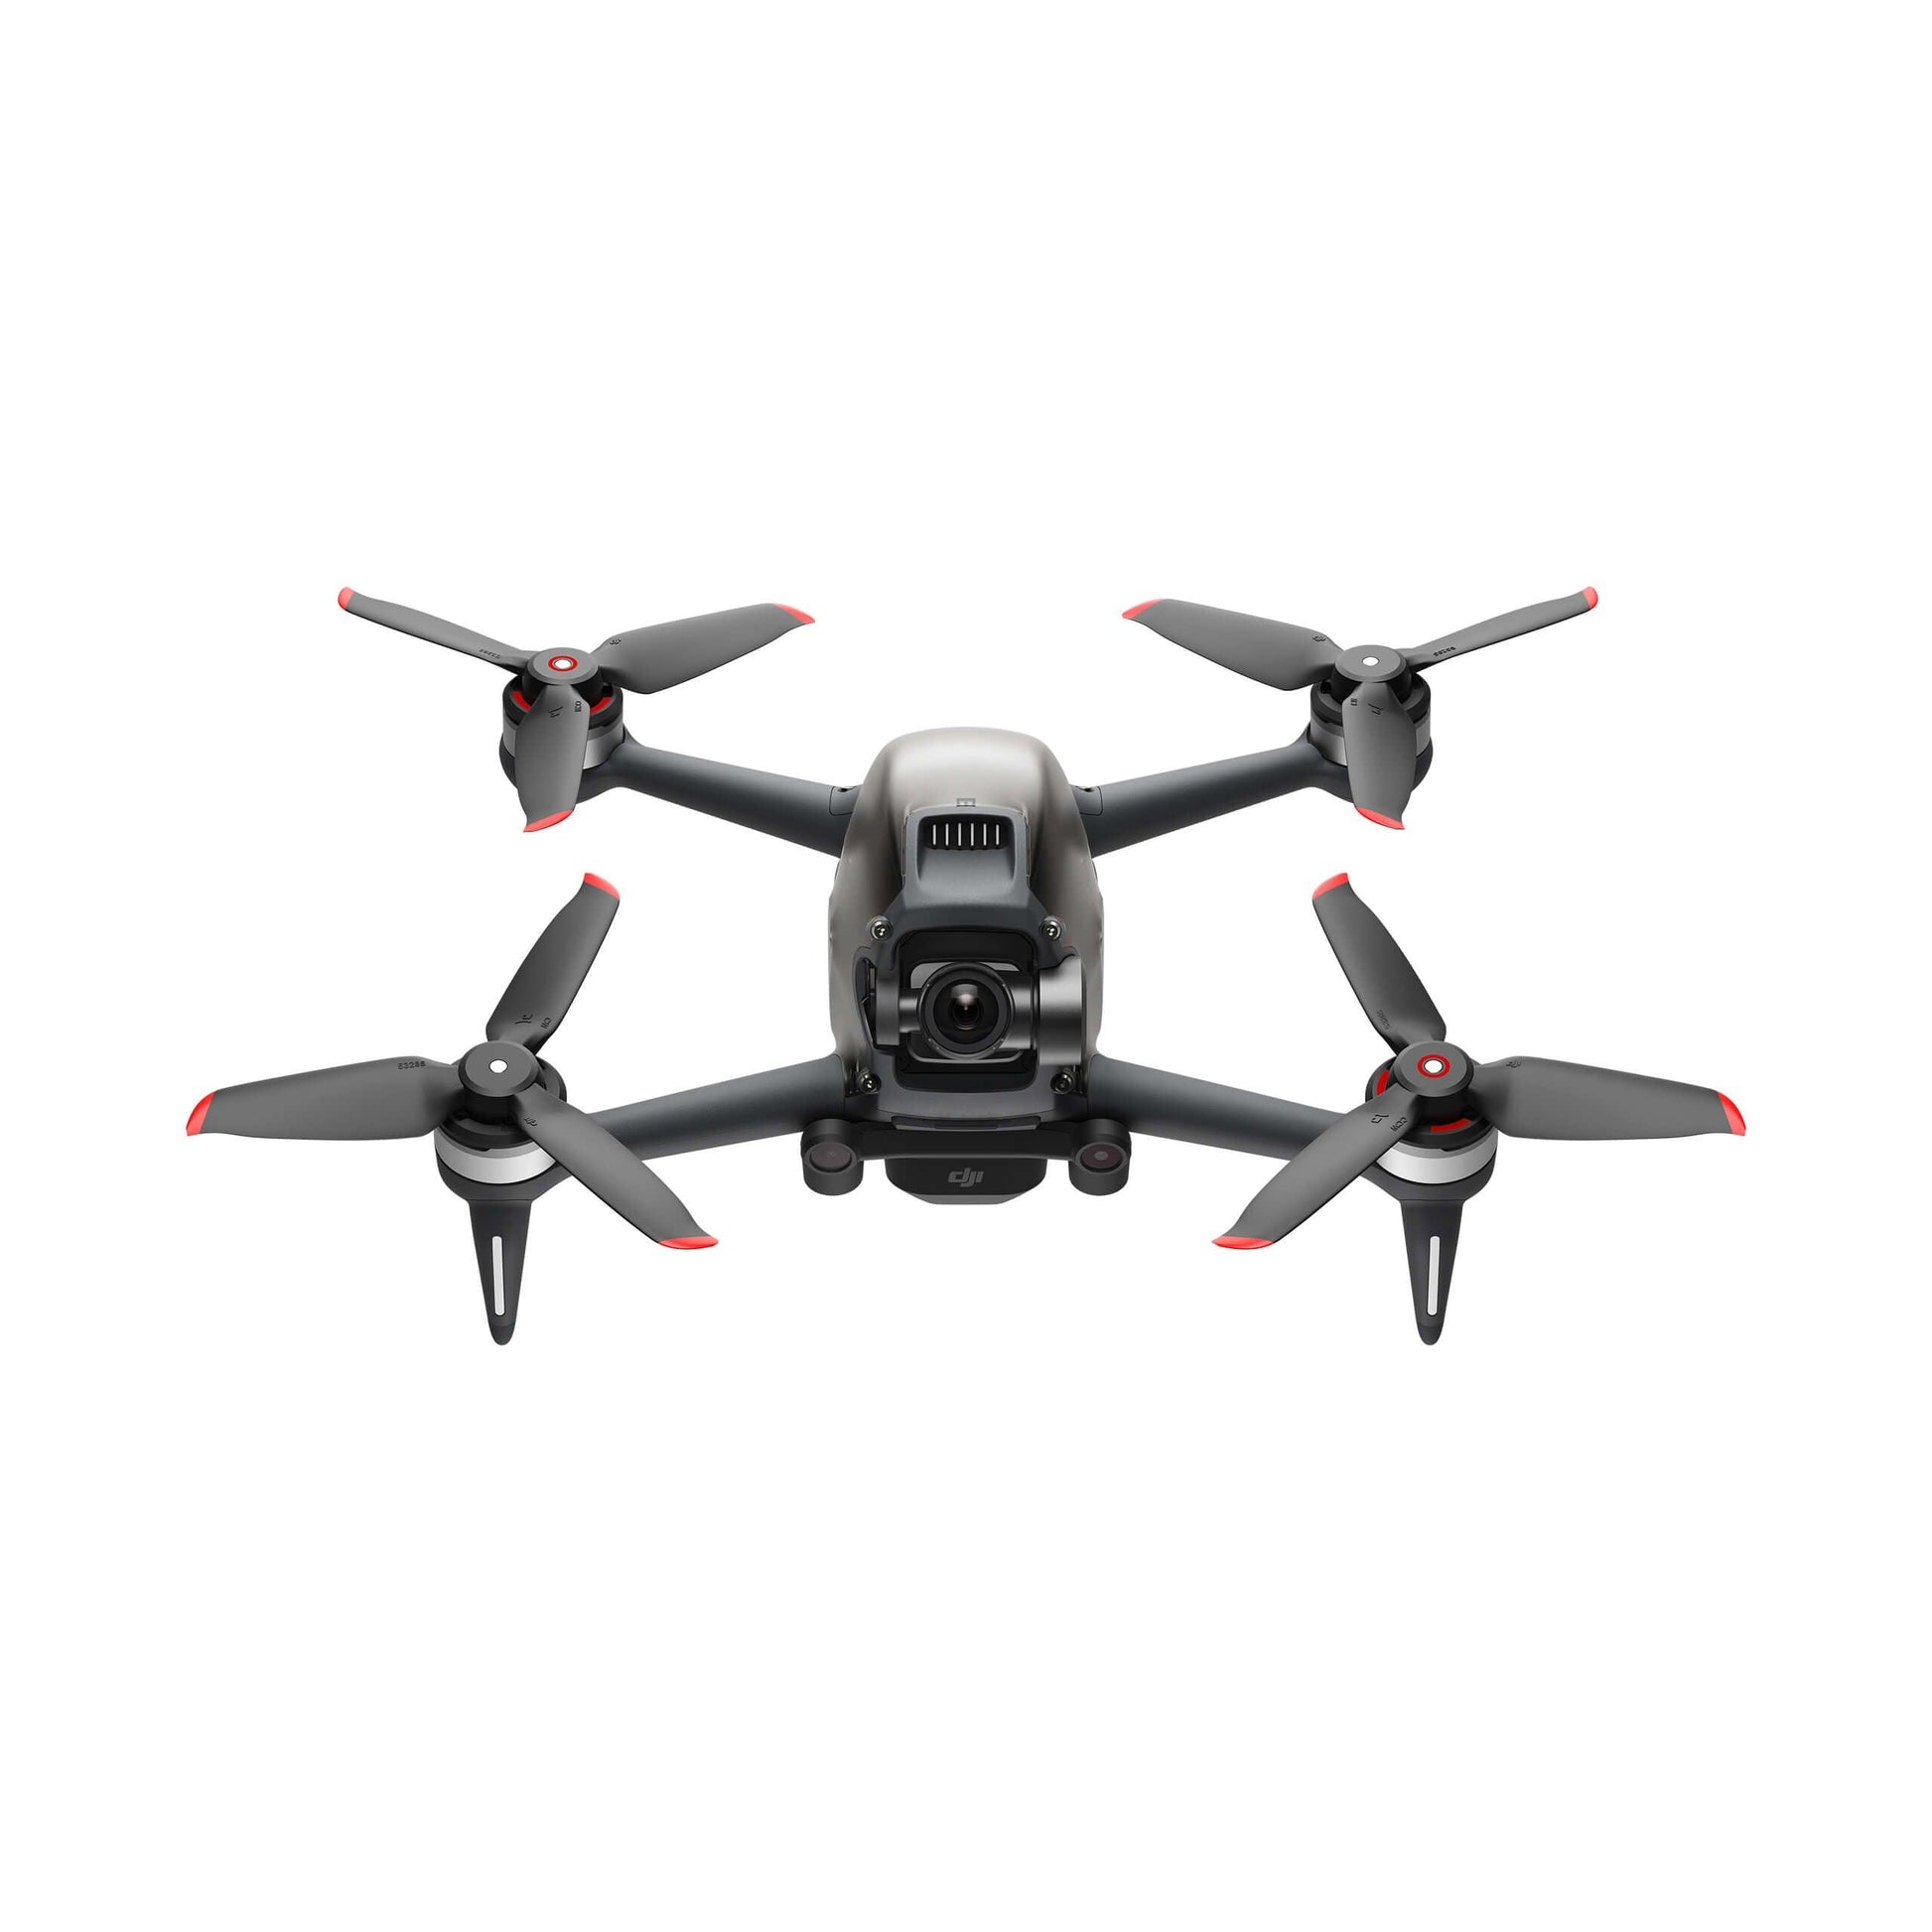 Protecteur d'hélice pour Drone Combo de course DJI FPV, accessoire